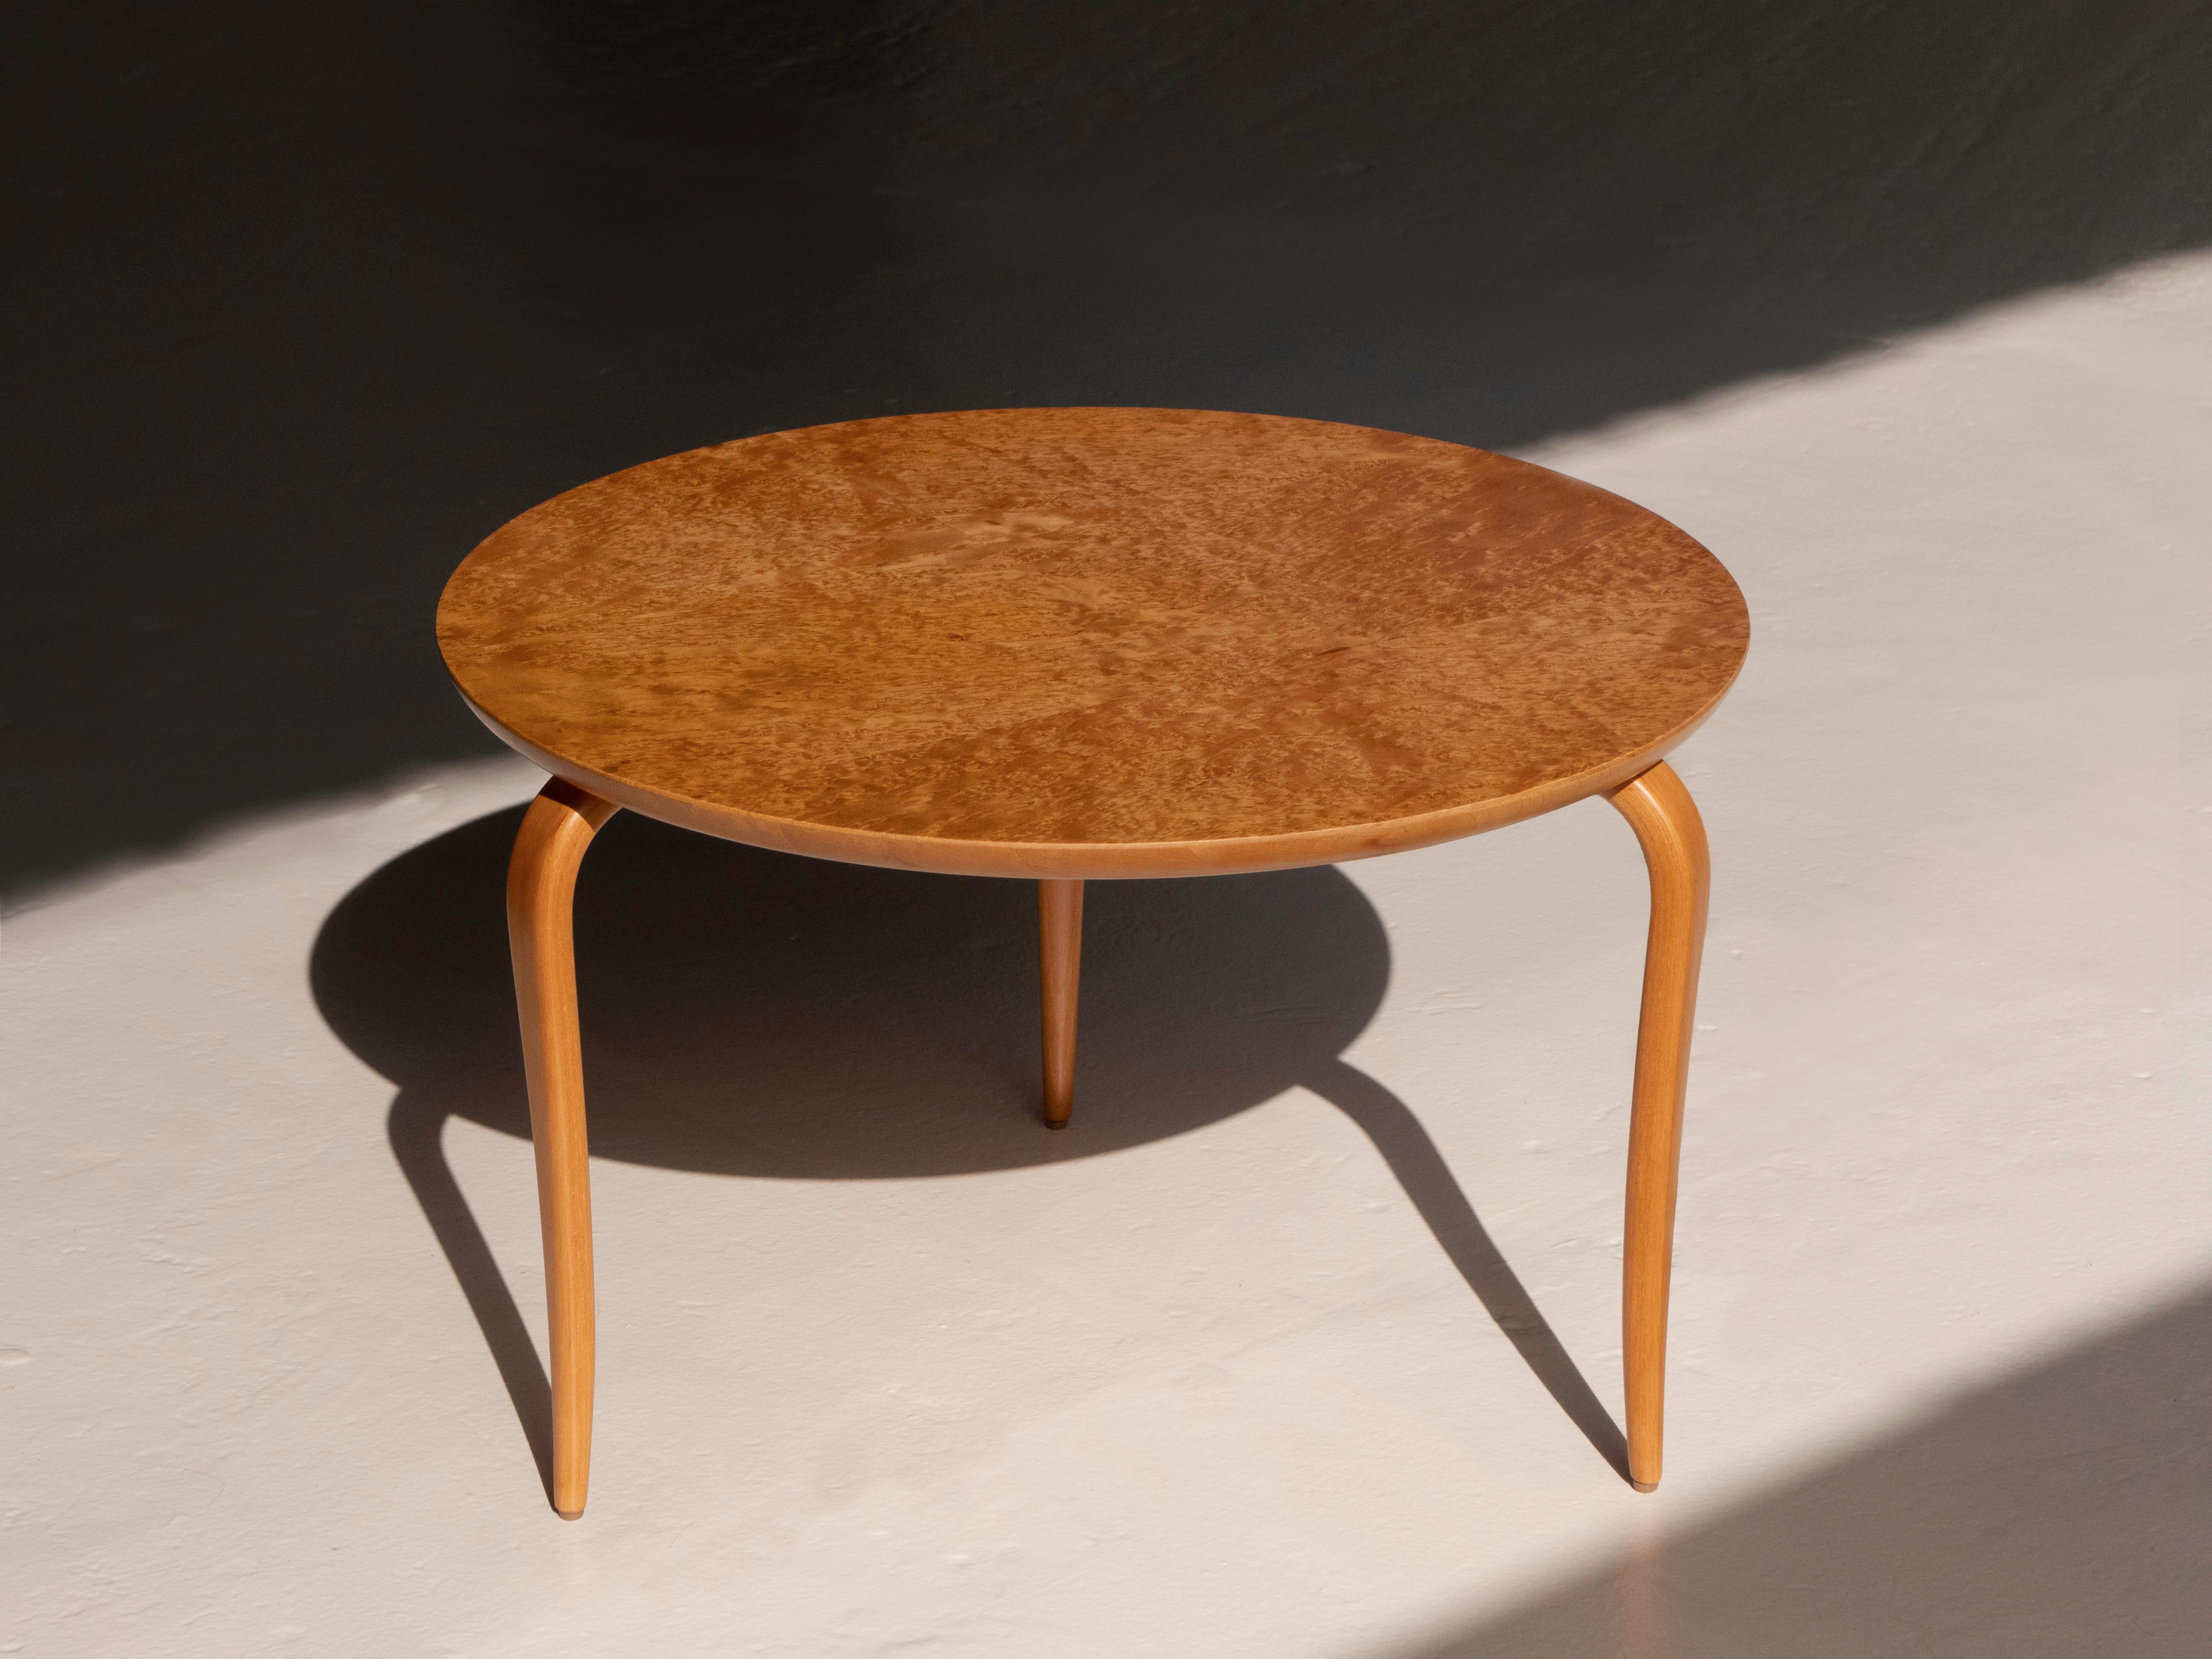 Table de cockail / table d'appoint 'Annika' de Bruno Mathsson. Il est doté de pieds fuselés en bouleau massif et d'un plateau en bois de ronce. La table a été fabriquée par Dux, Suède, vers les années 1960. La table est en excellent état et a été